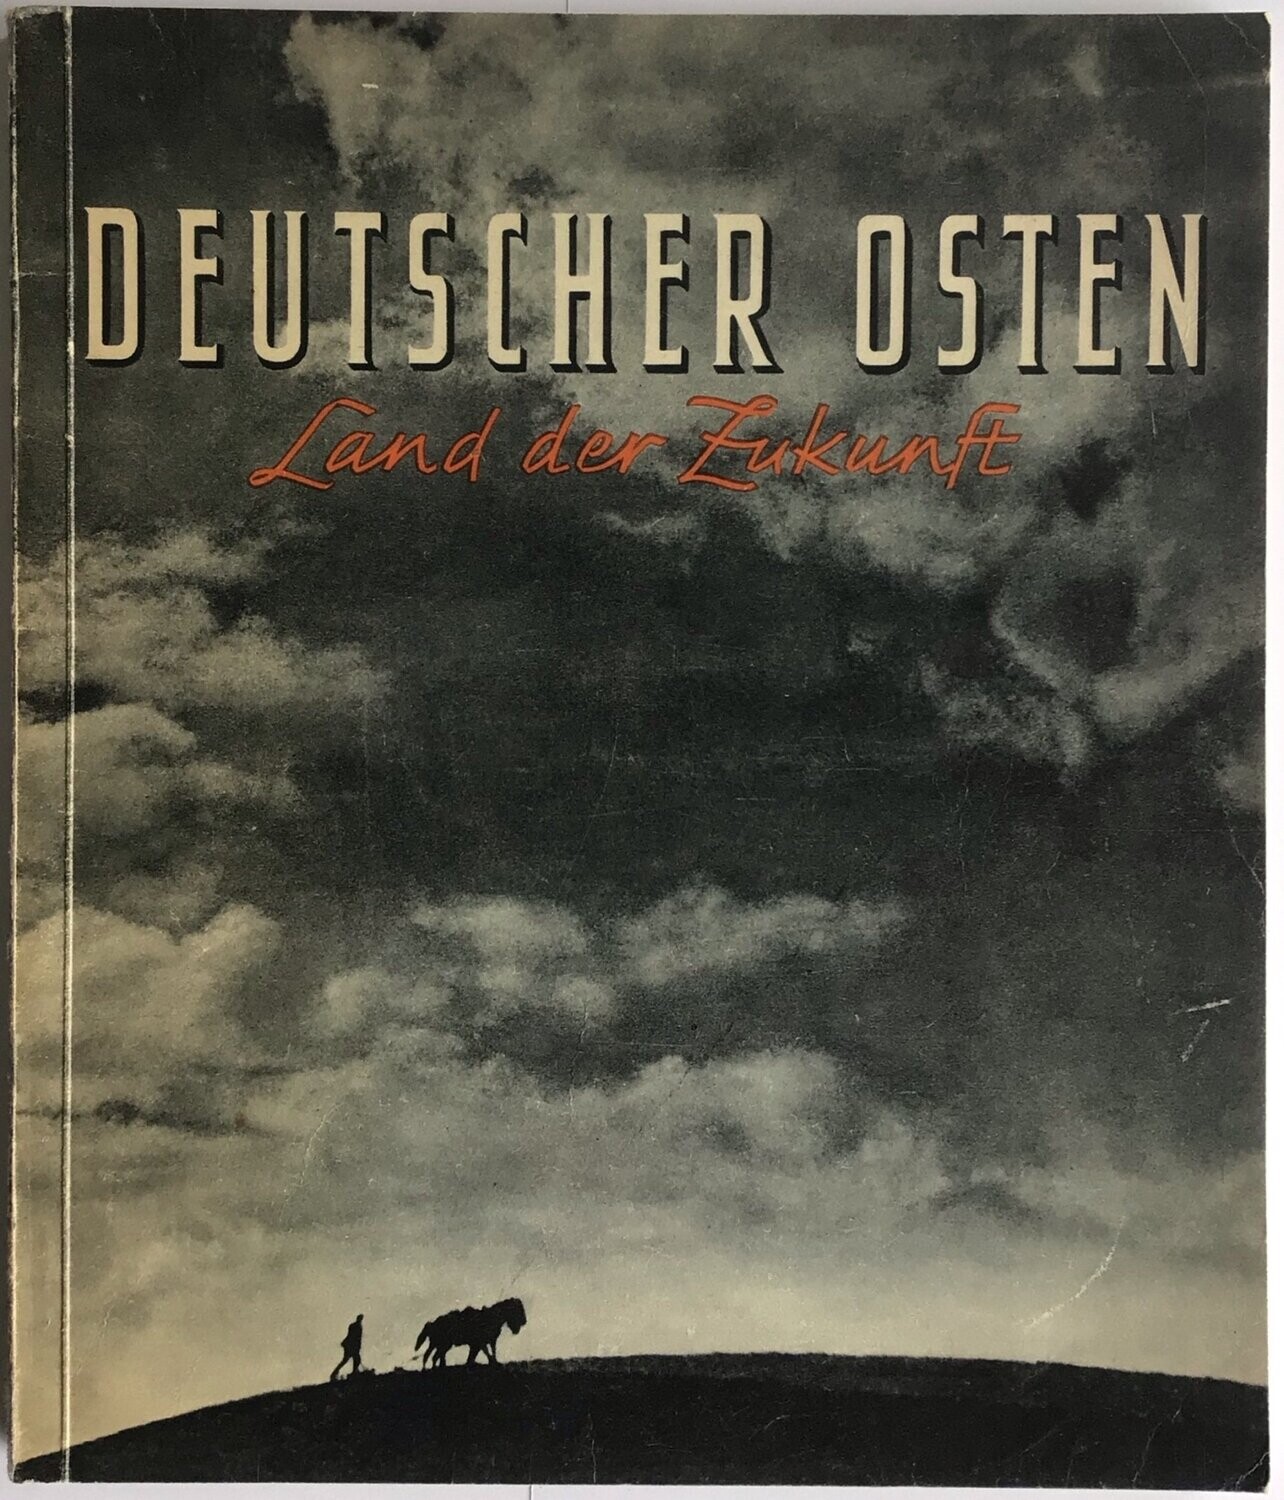 Hoffmann-Bildband: Deutscher Osten Land der Zukunft - Ein Ruf des Ostens an die Heimat! - Broschierte Ausgabe aus dem Jahr 1942 mit illustriertem Einband